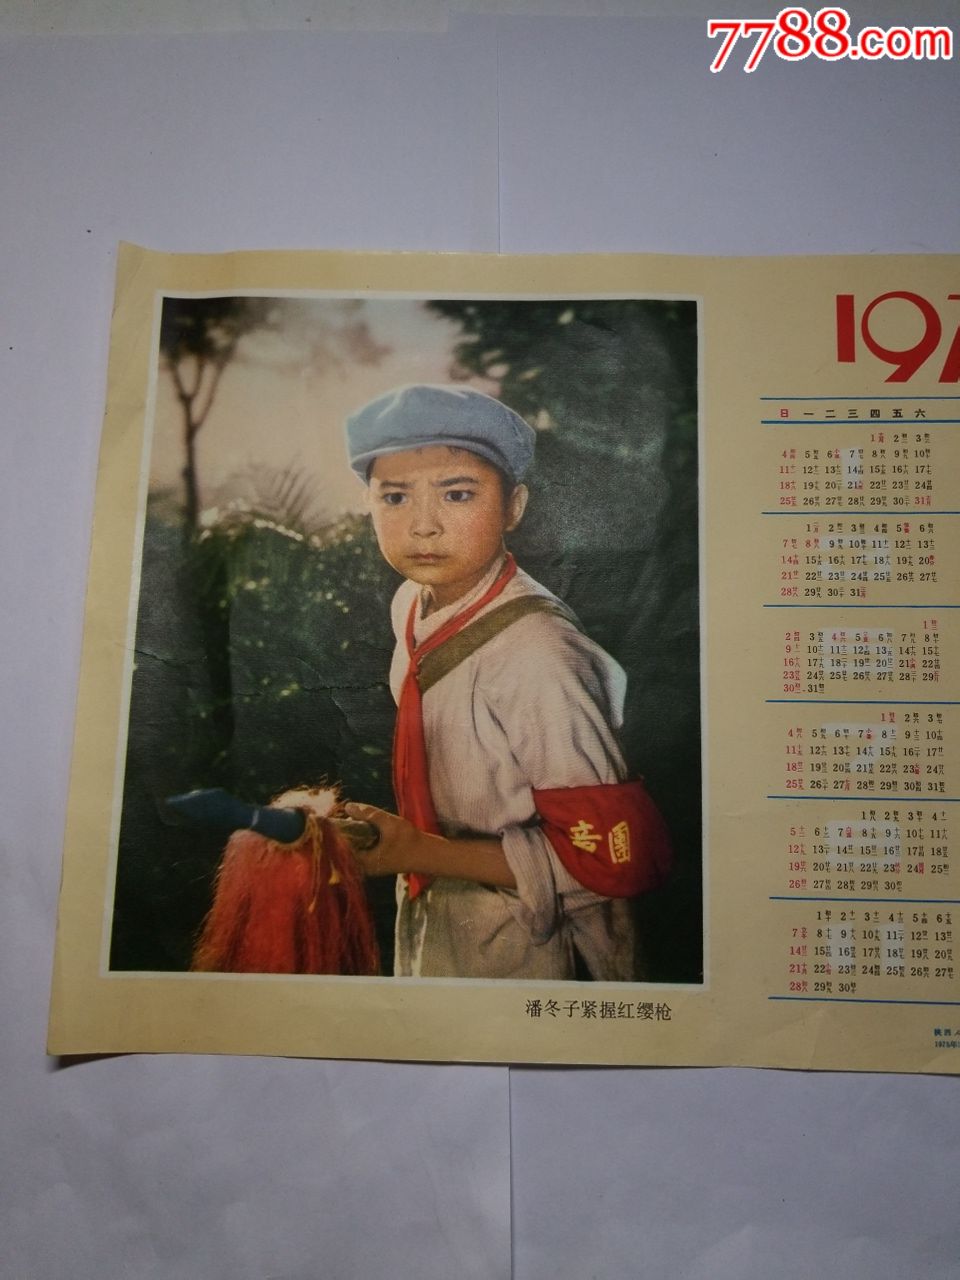 1968年潘东子紧握红缨枪图案年历